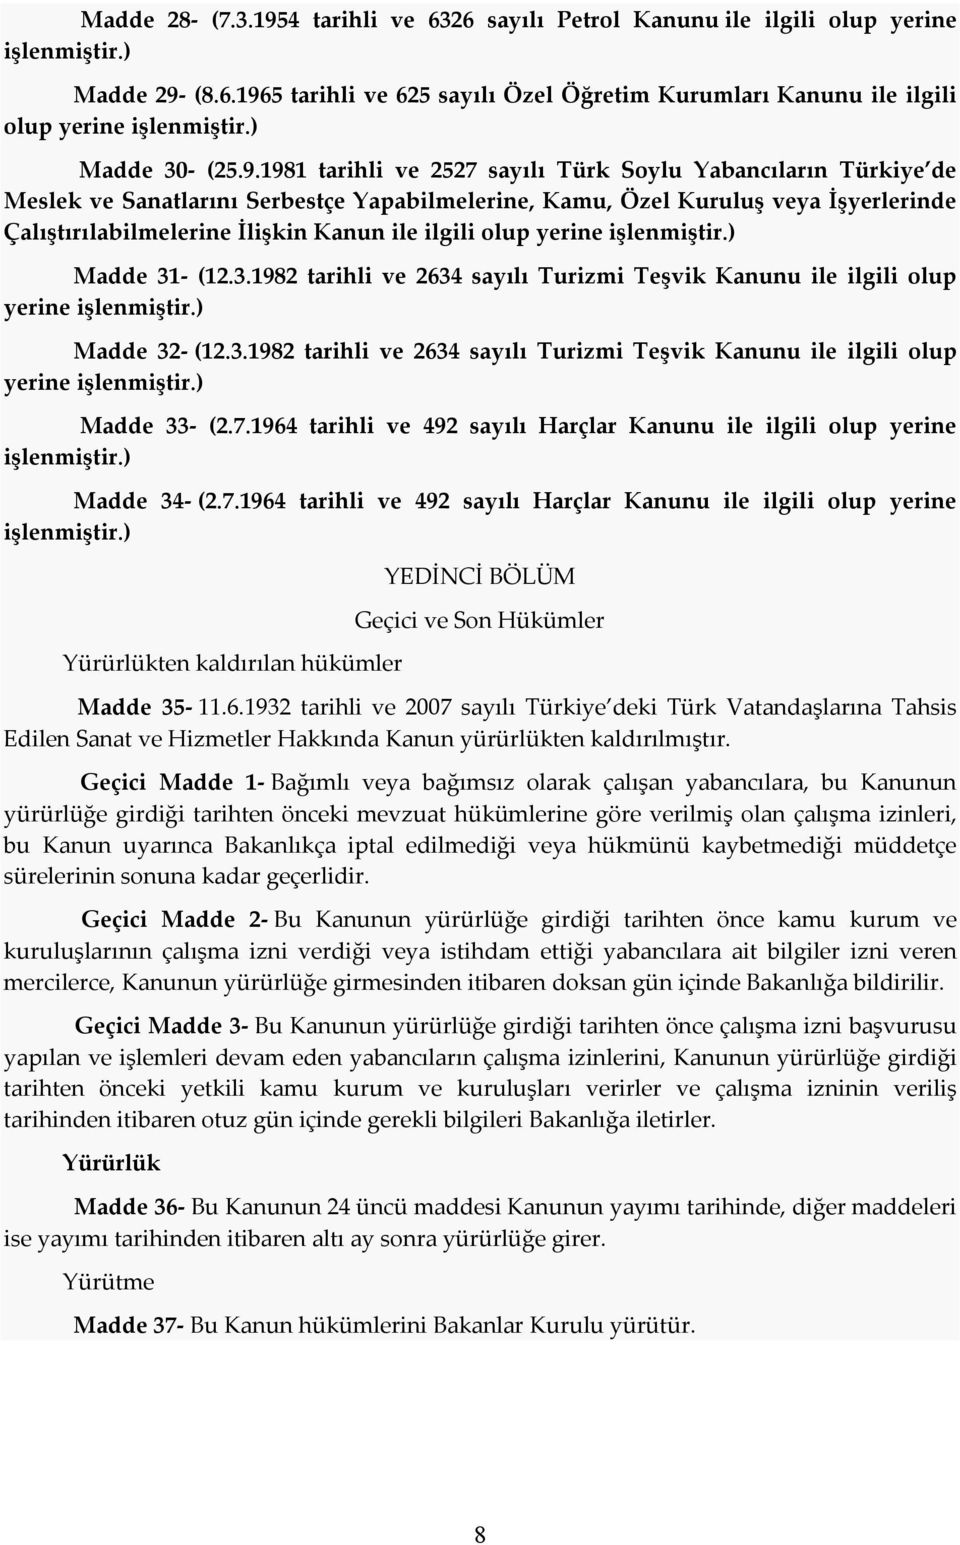 1981 tarihli ve 2527 sayılı Türk Soylu Yabancıların Türkiye de Meslek ve Sanatlarını Serbestçe Yapabilmelerine, Kamu, Özel Kuruluş veya İşyerlerinde Çalıştırılabilmelerine İlişkin Kanun ile ilgili